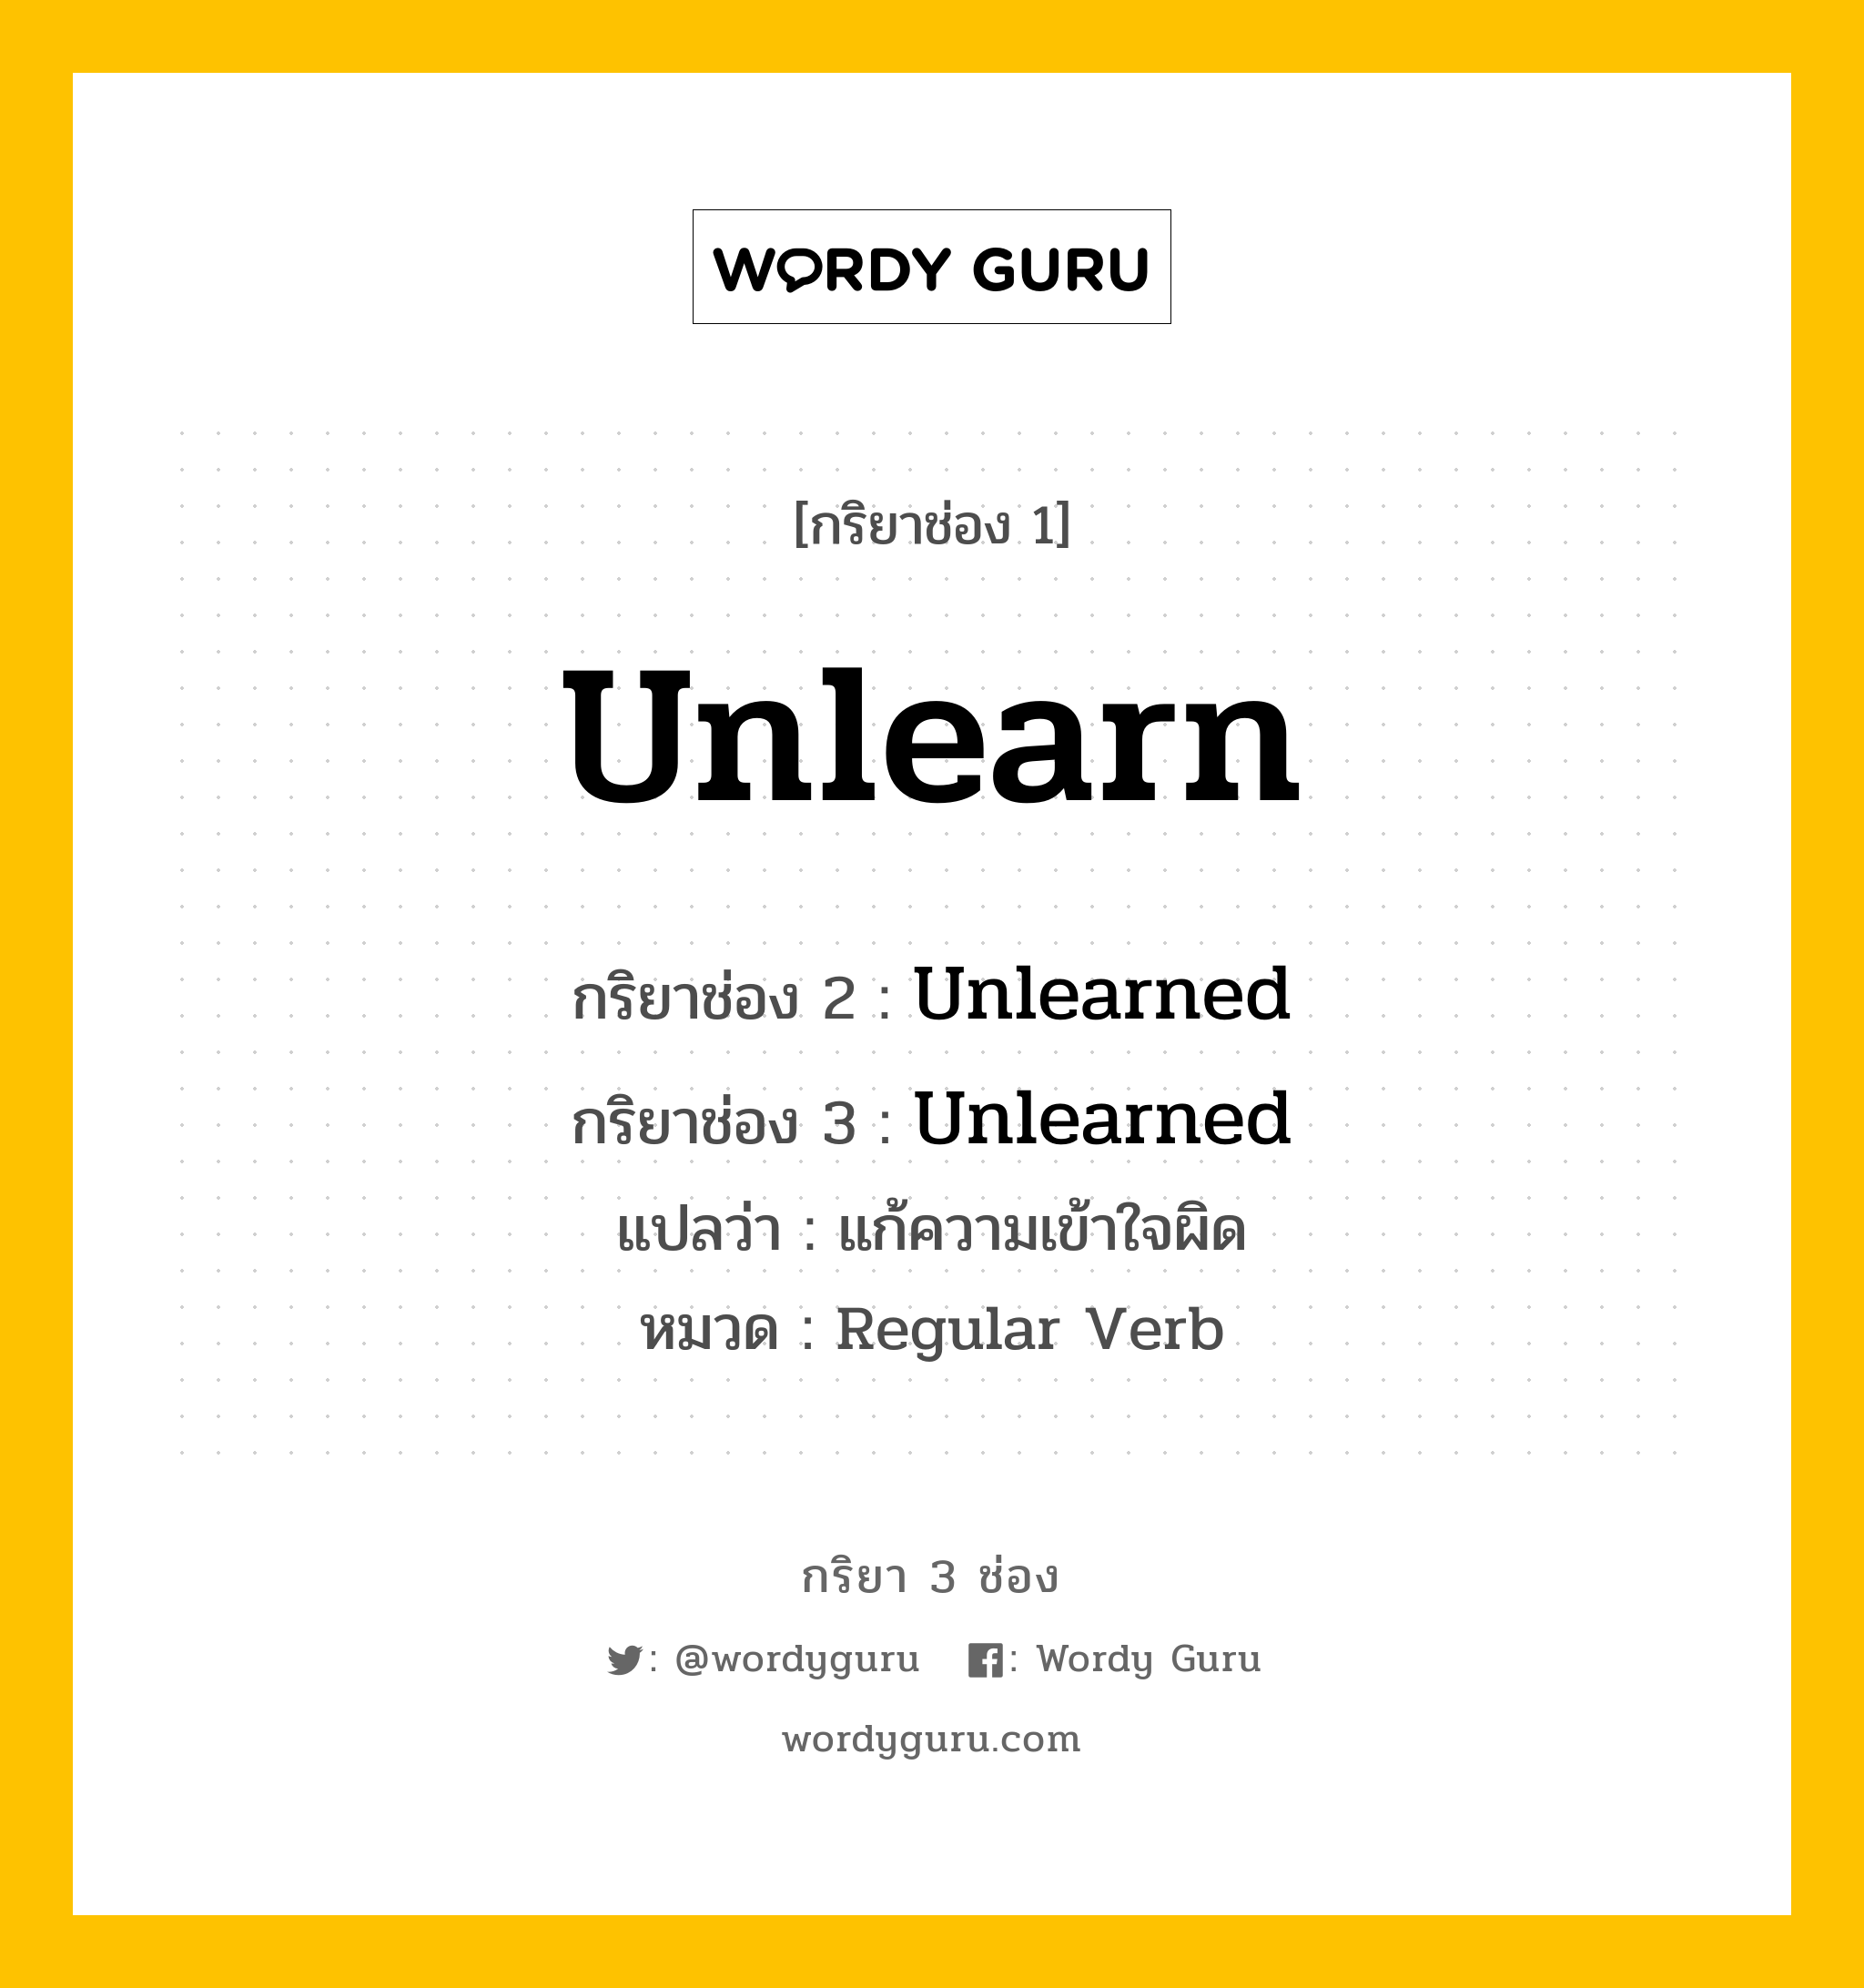 กริยา 3 ช่อง ของ Unlearn คืออะไร? มาดูคำอ่าน คำแปลกันเลย, กริยาช่อง 1 Unlearn กริยาช่อง 2 Unlearned กริยาช่อง 3 Unlearned แปลว่า แก้ความเข้าใจผิด หมวด Regular Verb หมวด Regular Verb